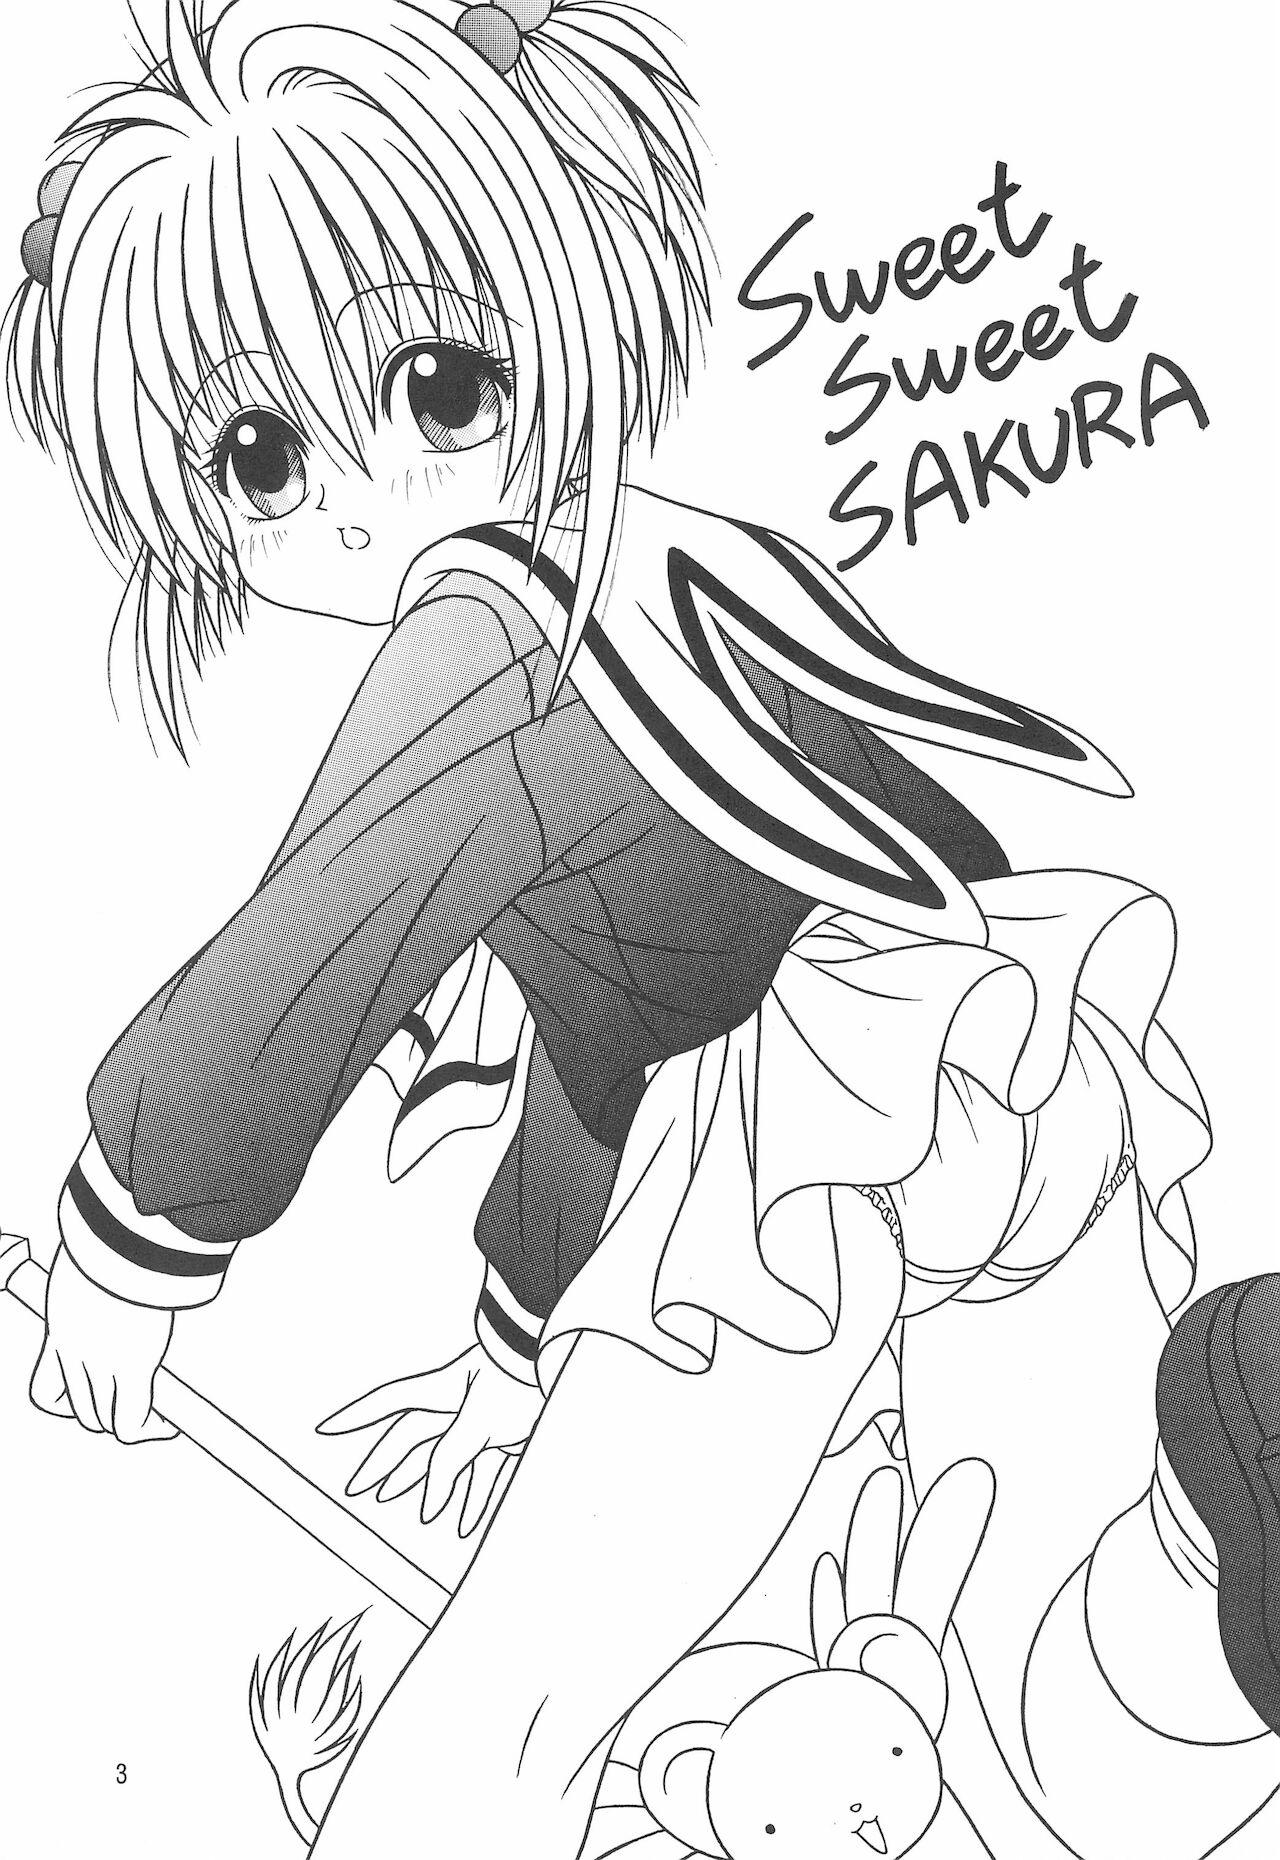 Sweet Sweet SAKURA 4